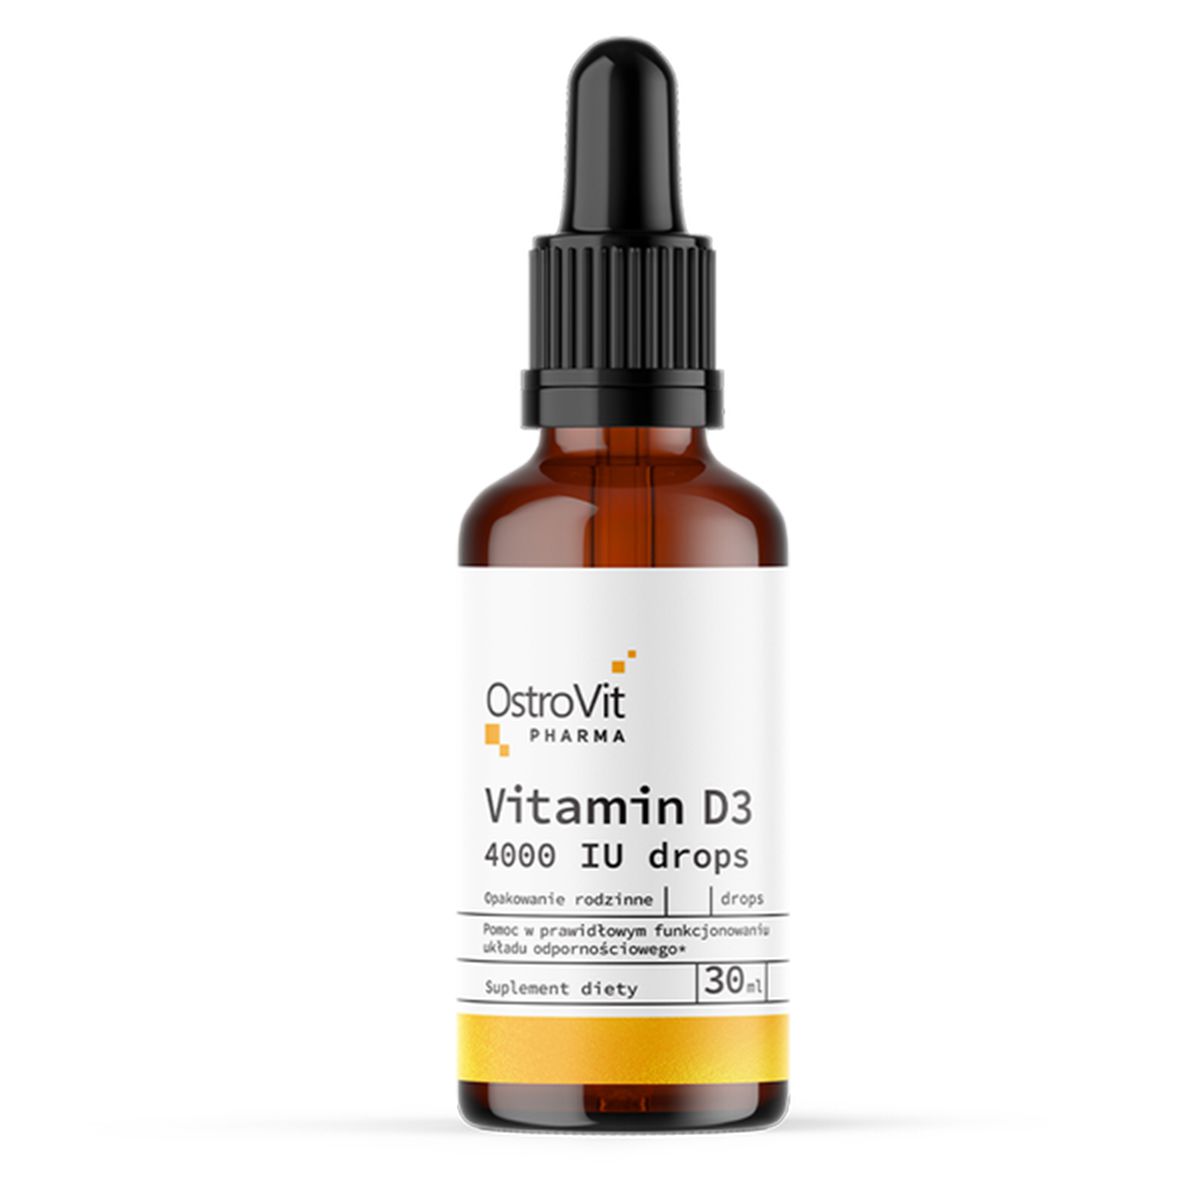 Đặc điểm của OstroVit Vitamin D3 4000 IU?
